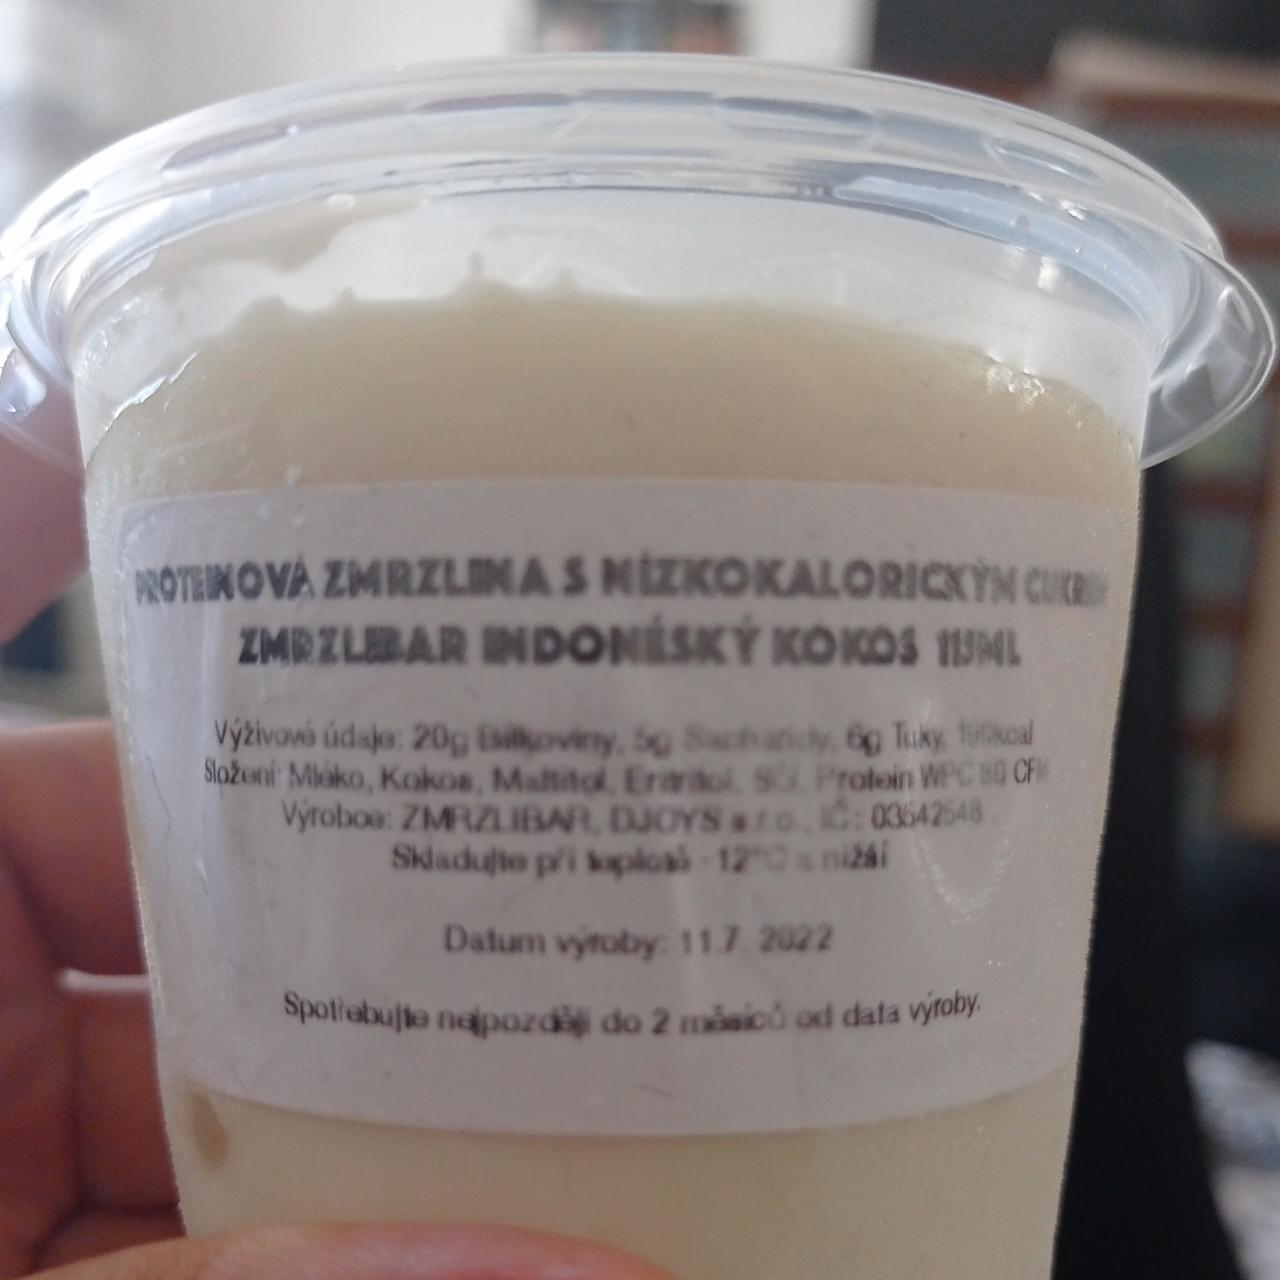 Fotografie - proteinová zmrzlina s nízkokalorickým cukrem zmrzlinář indonéský kokos Zmrzlibar Djoys